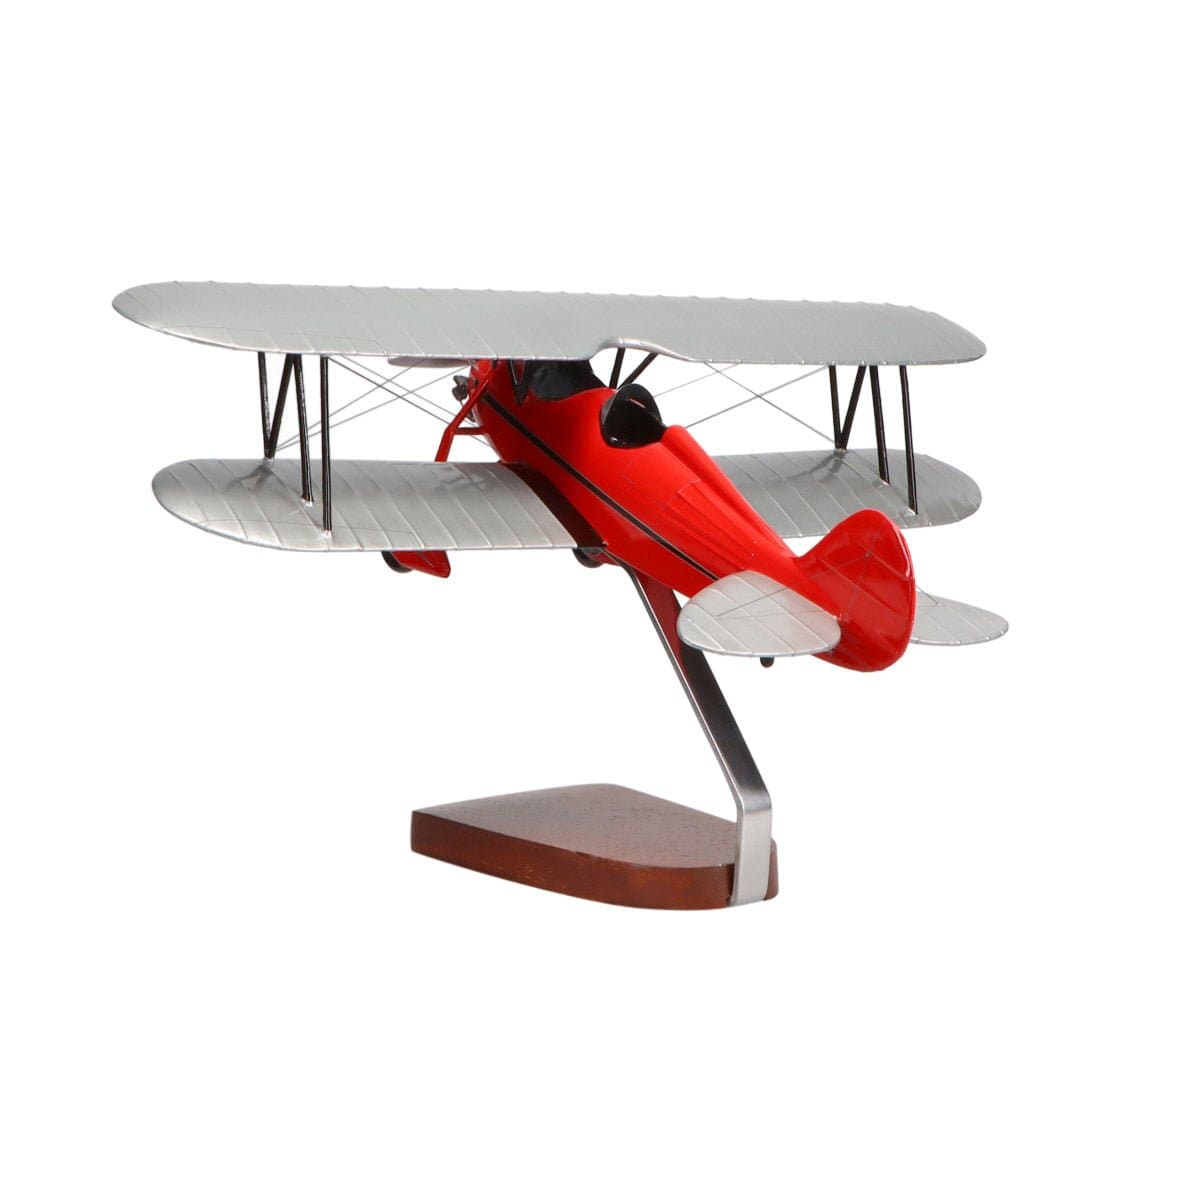 Waco Aircraft Company RNF (Red) Large Mahogany Model